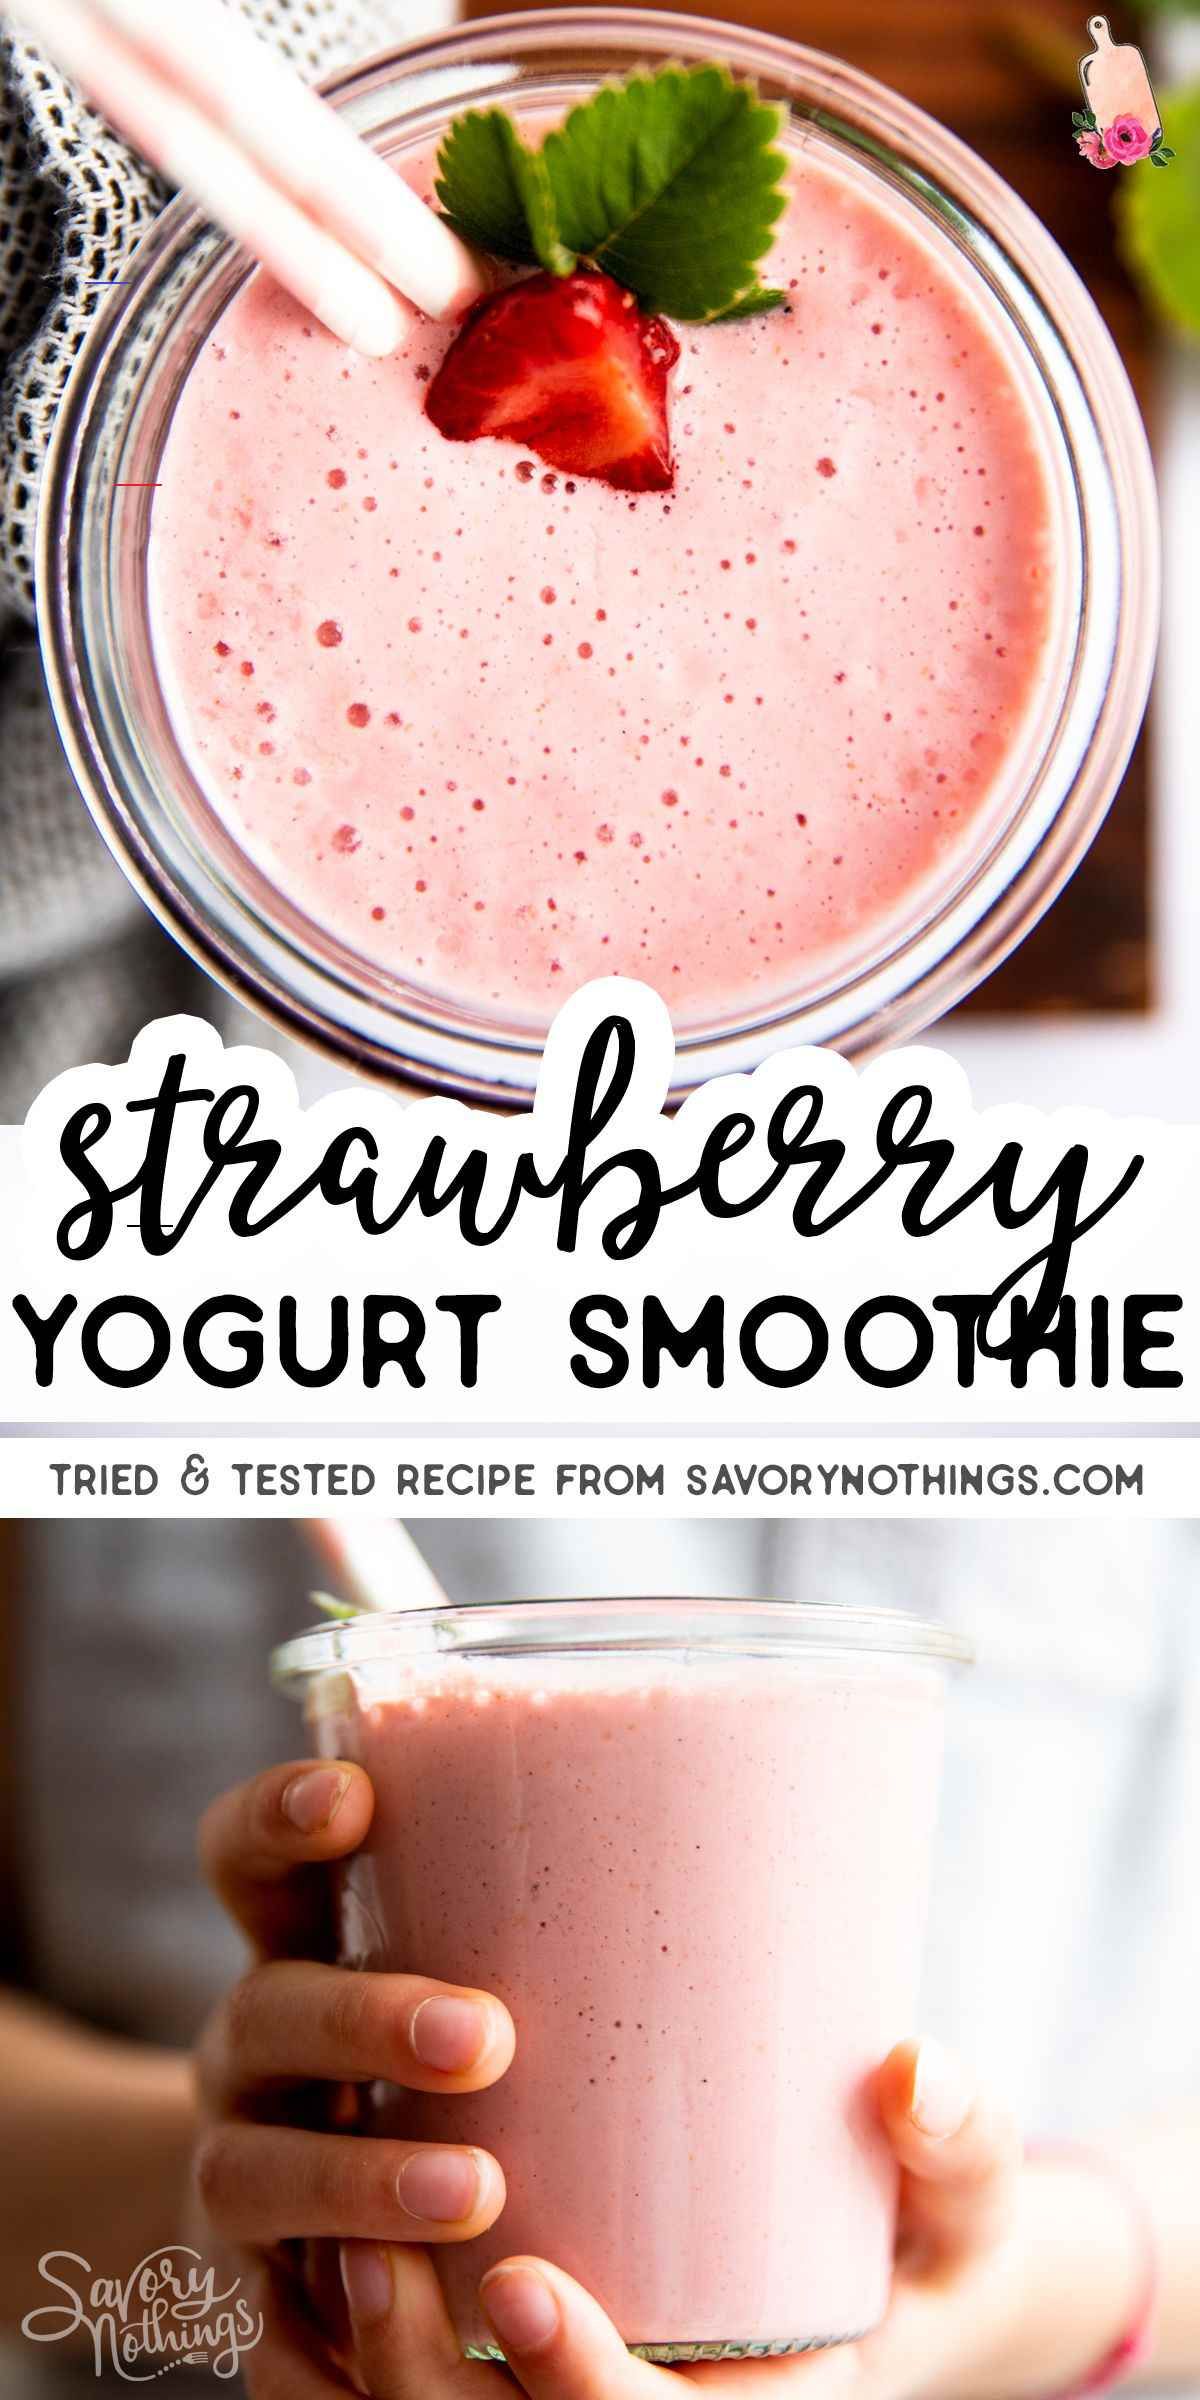 Basic Smoothie Recipe With Yogurt